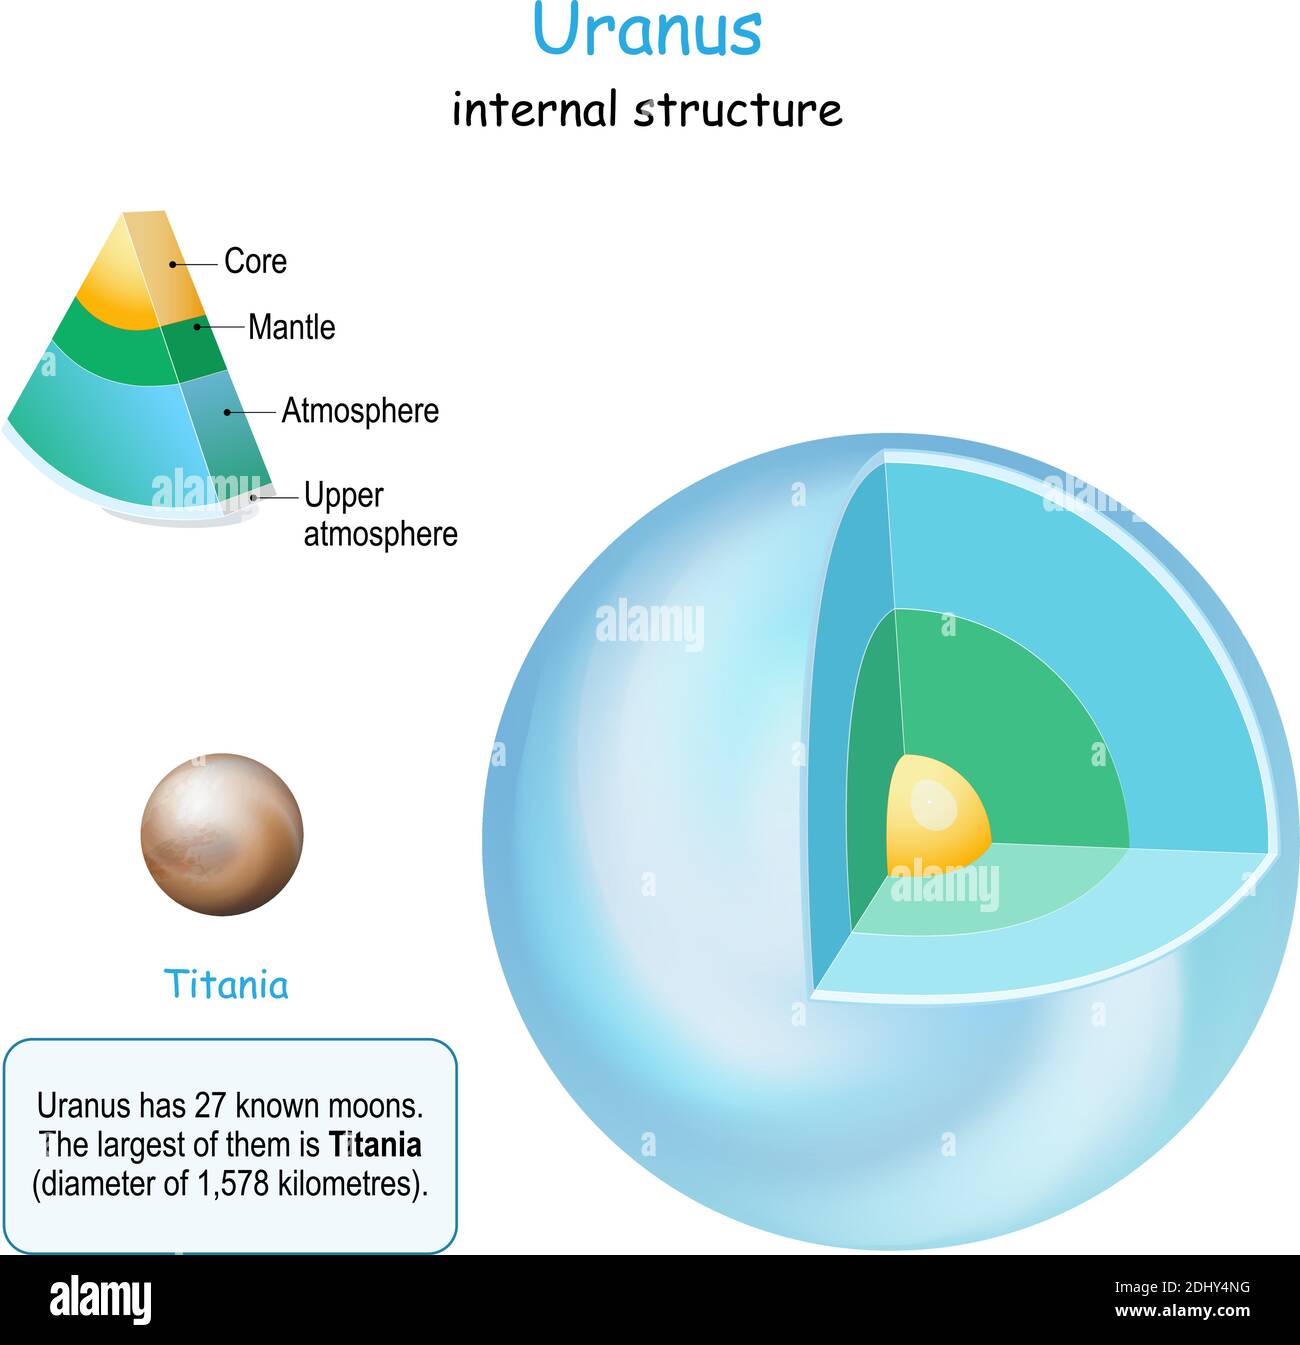 Urano struttura interna. Sezione trasversale del pianeta dal nucleo al mantello e crosta. La titania è Luna di Urano. Sistema solare. Infografica. Vettore Illustrazione Vettoriale